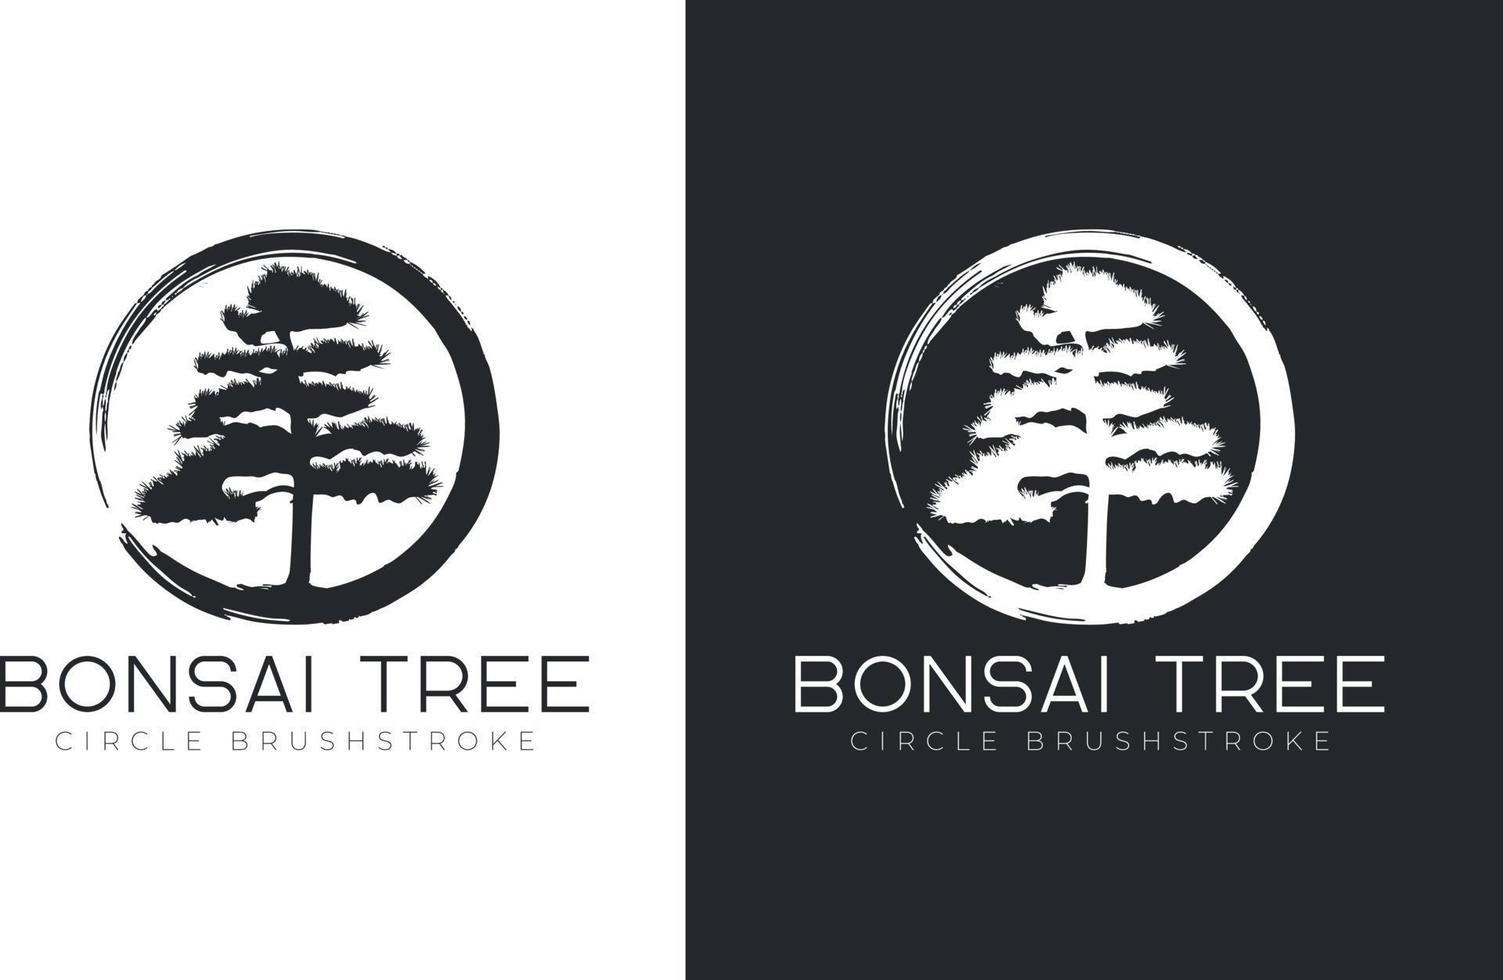 bonsai tree logo design vector template